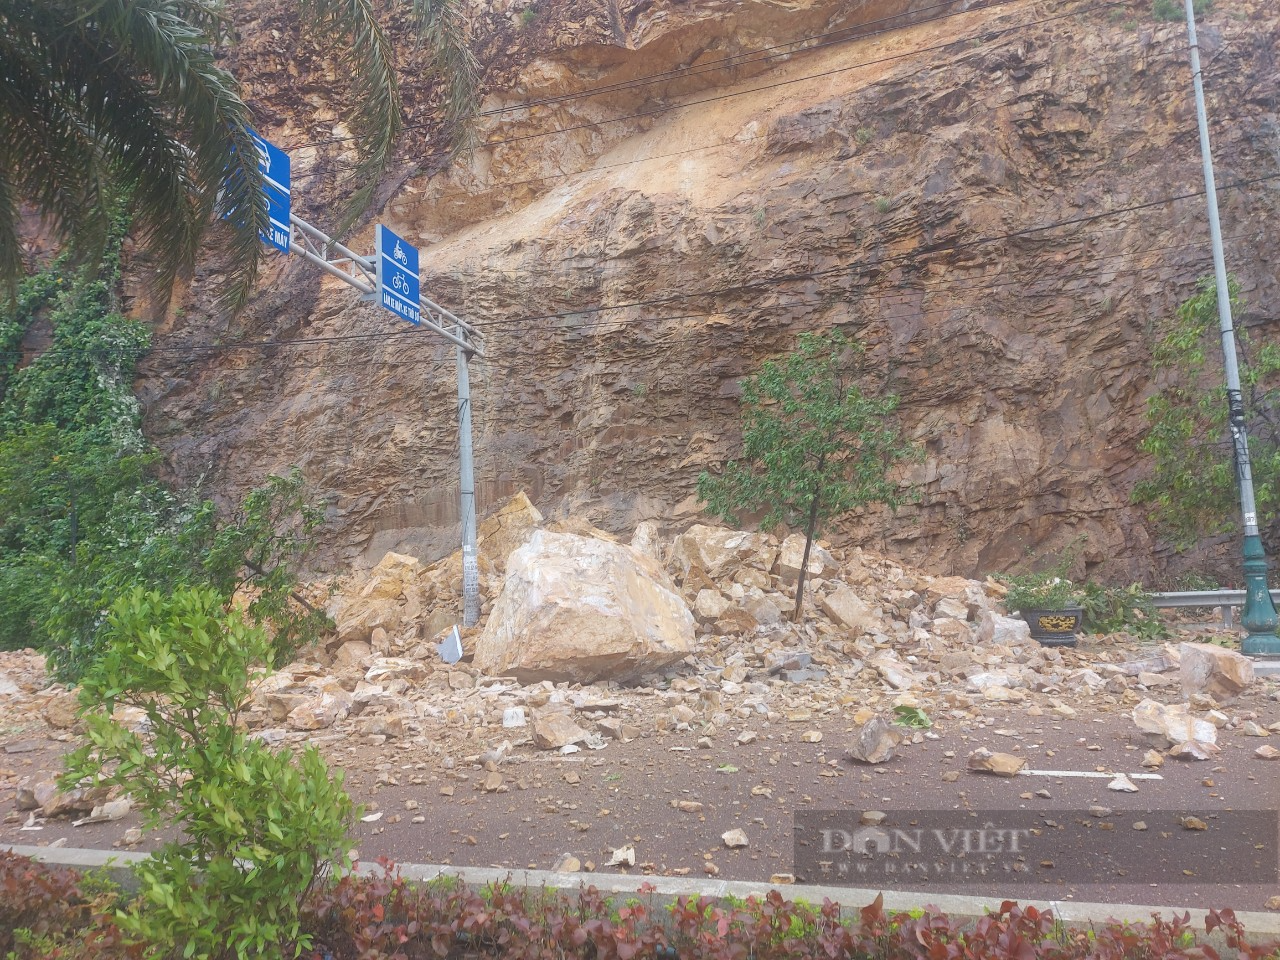 Bình Định: Núi Bà Hỏa bị sạt lở nghiêm trọng, đá lớn đổ ập xuống đường, 1 người bị thương nặng - Ảnh 3.